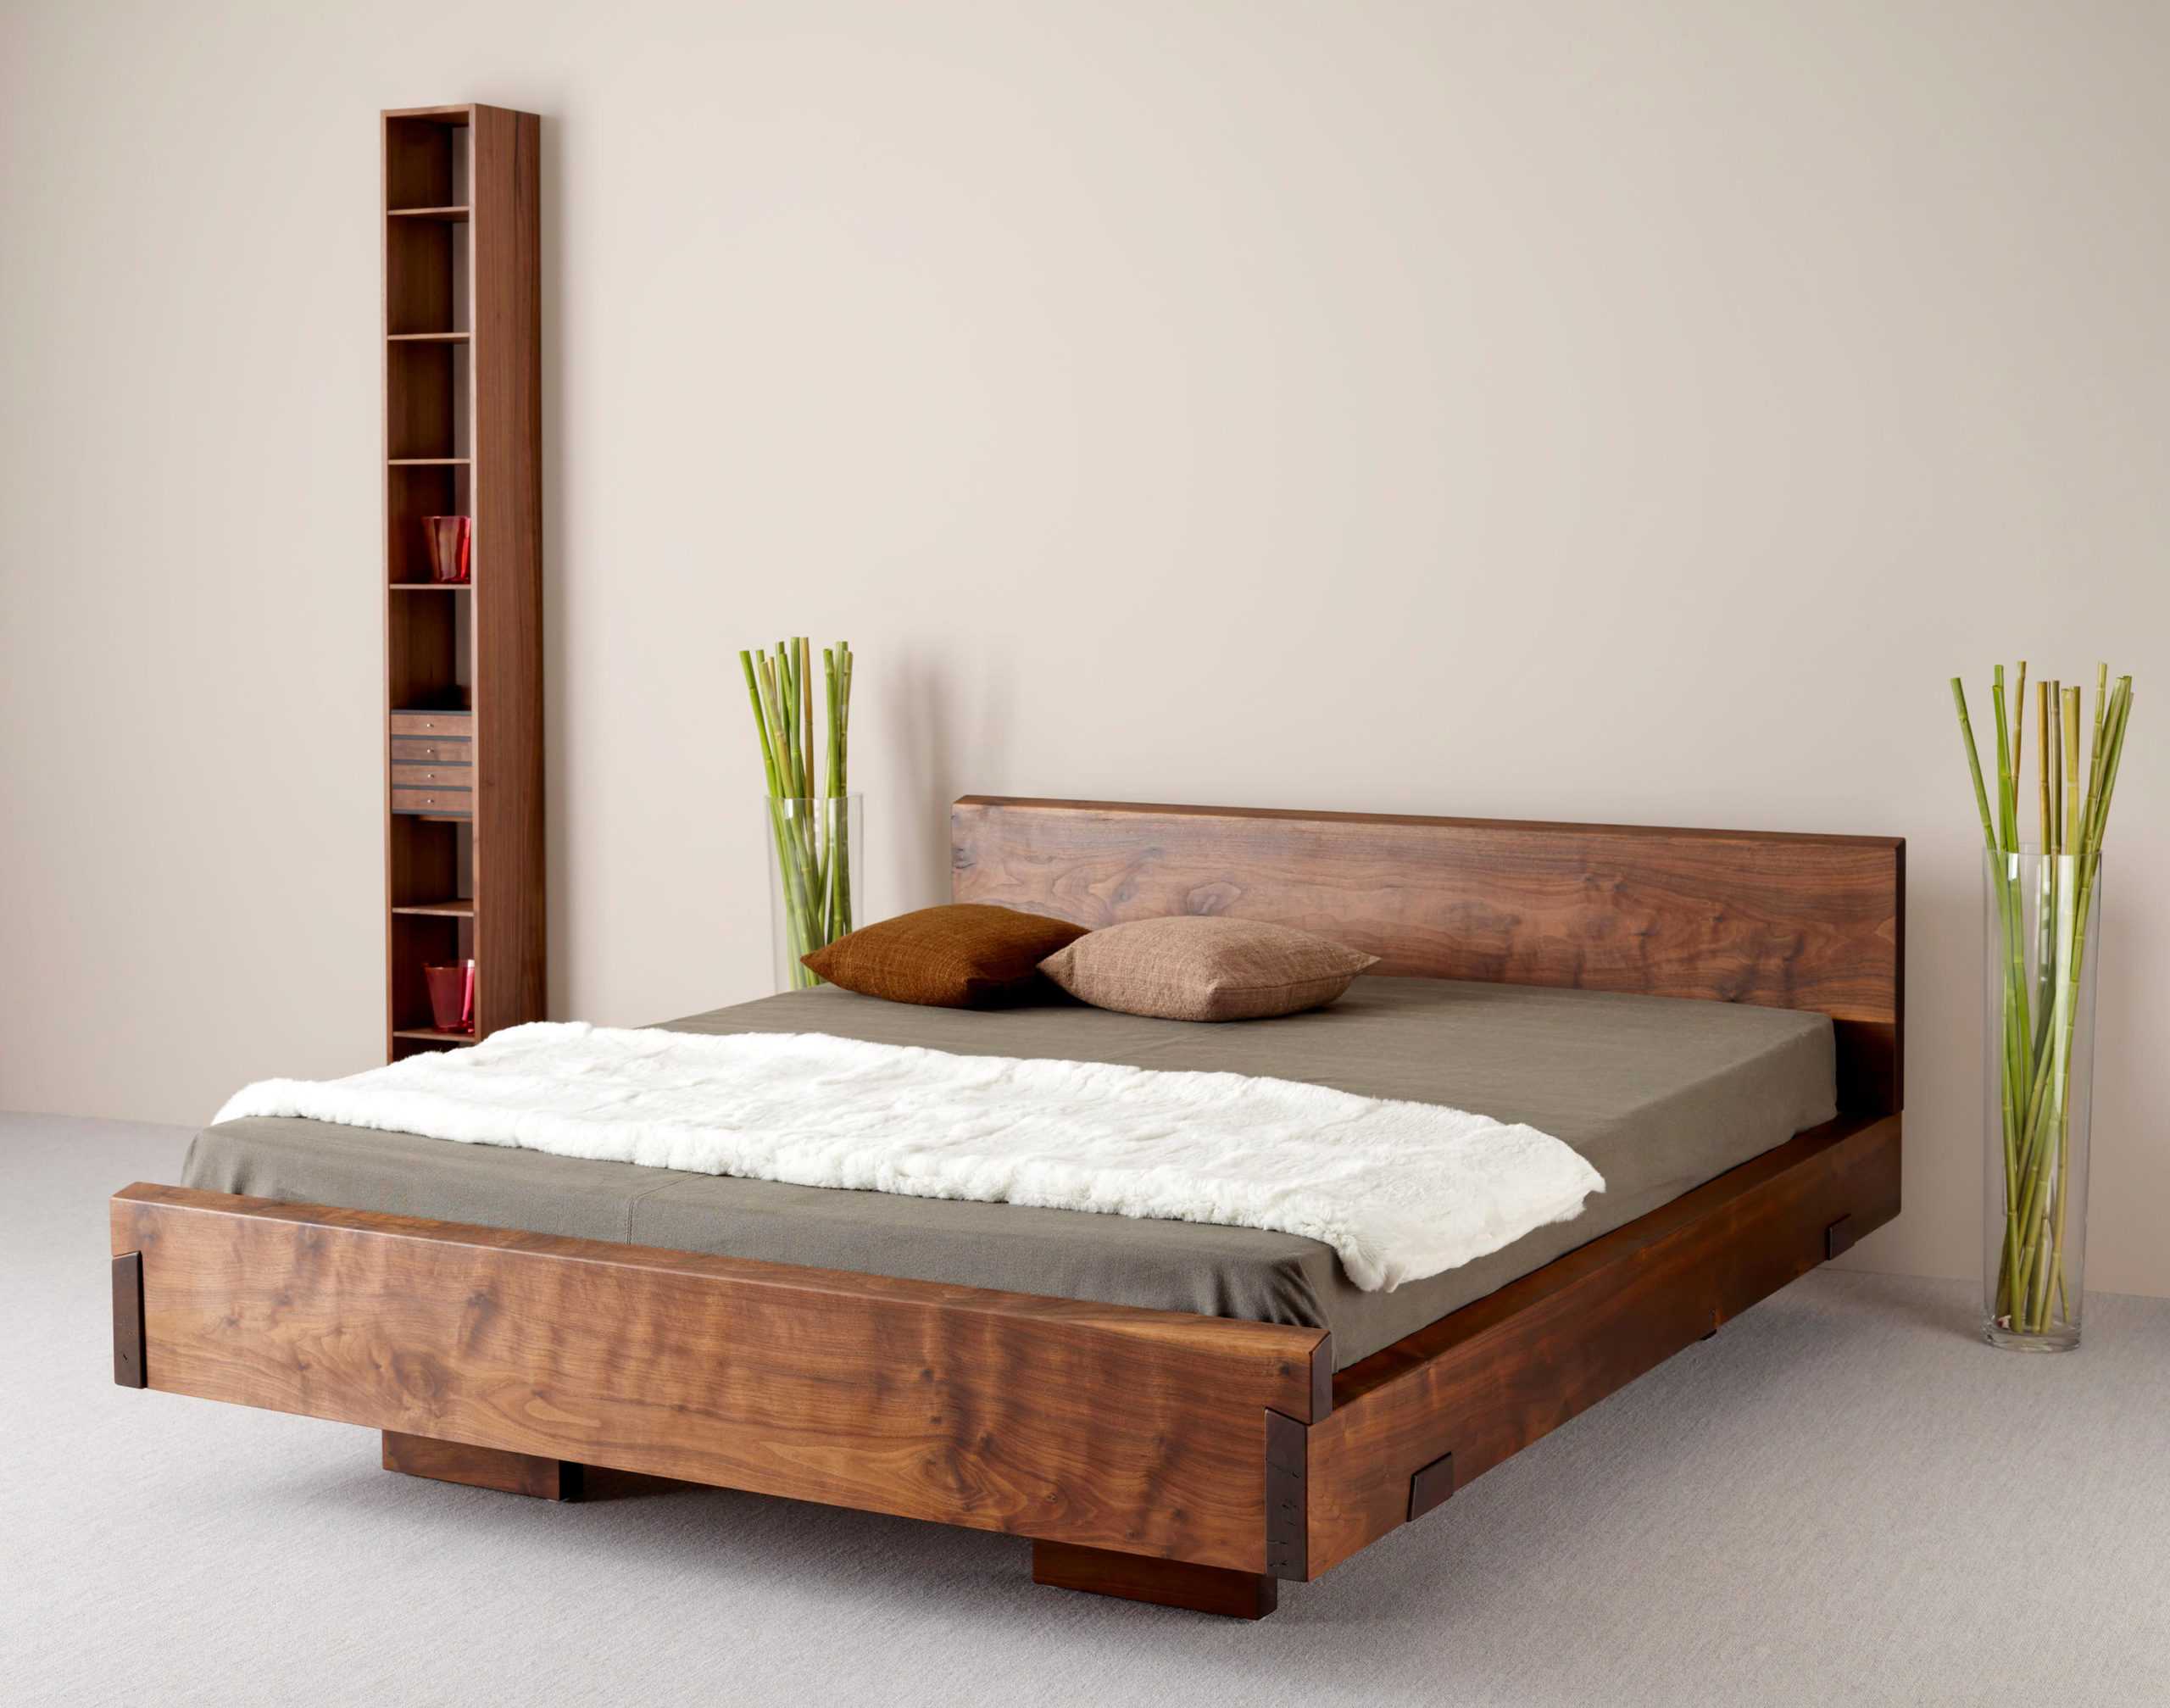 Как купить лучшую кровать из массива натурального дерева